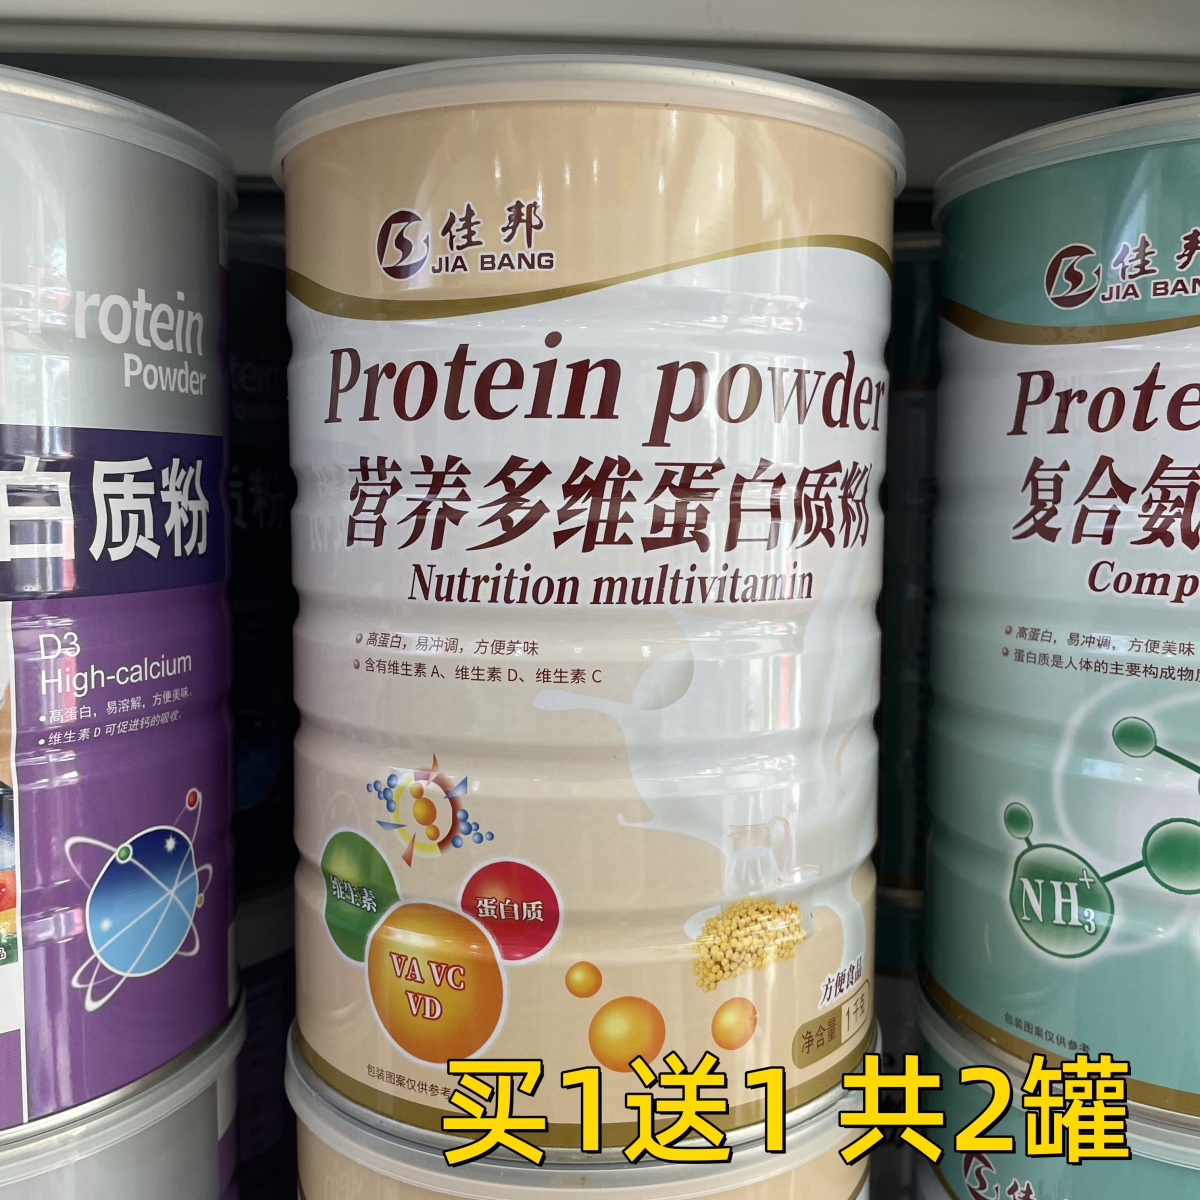 【买1罐送1罐 再送钙片】佳邦营养多维蛋白质粉